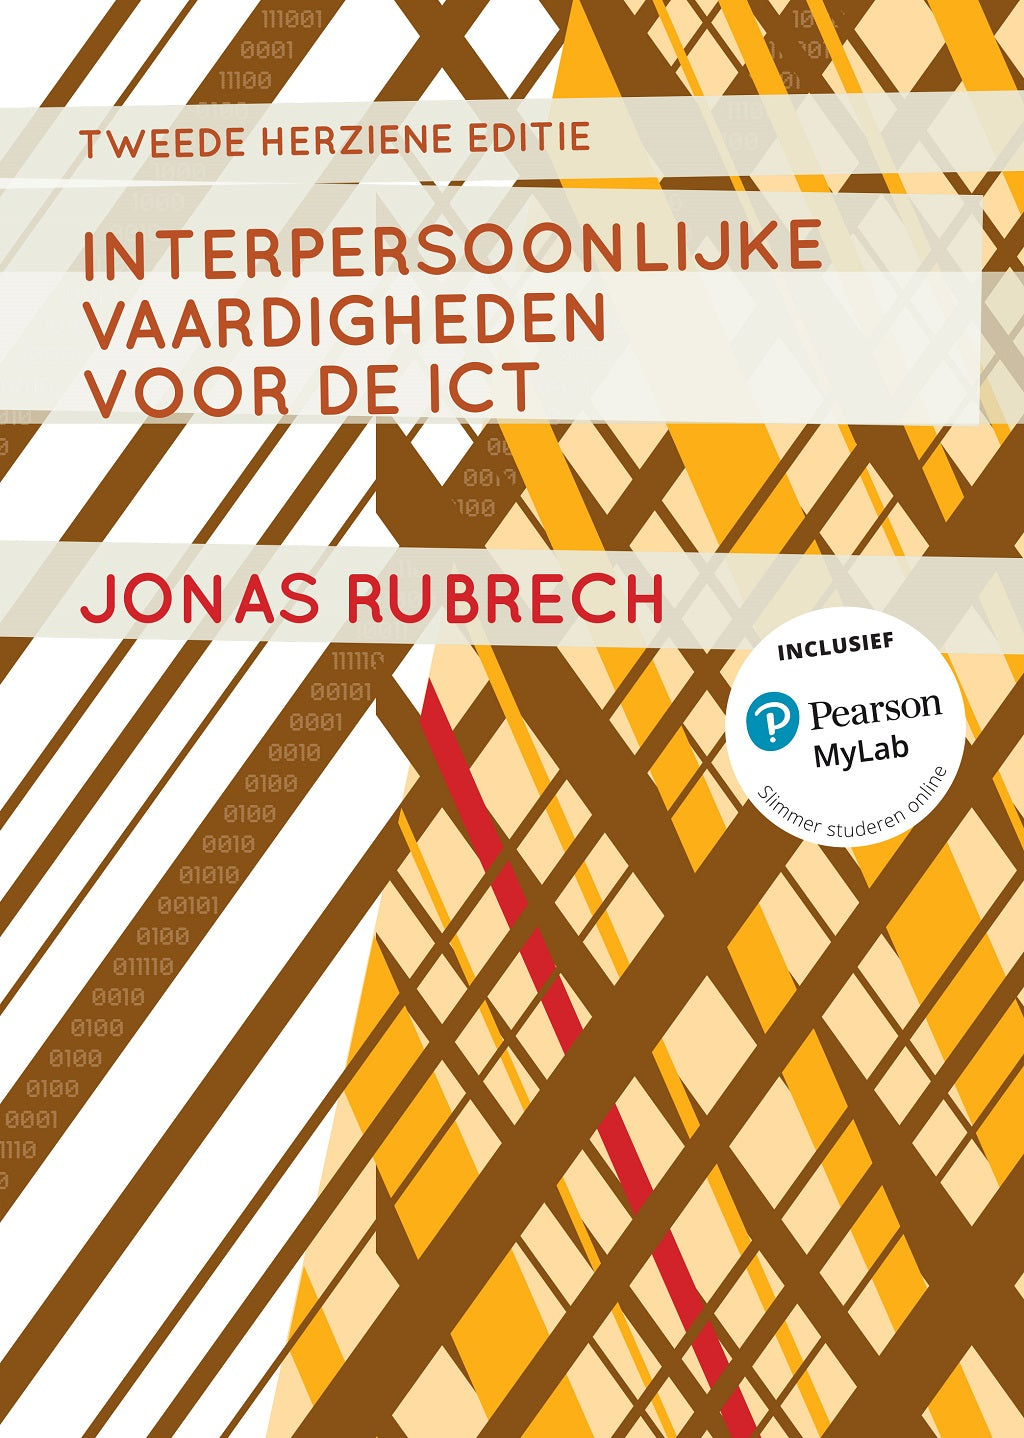 Interpersoonlijke vaardigheden voor de ICT, 2e herziene editie (Digitaal)